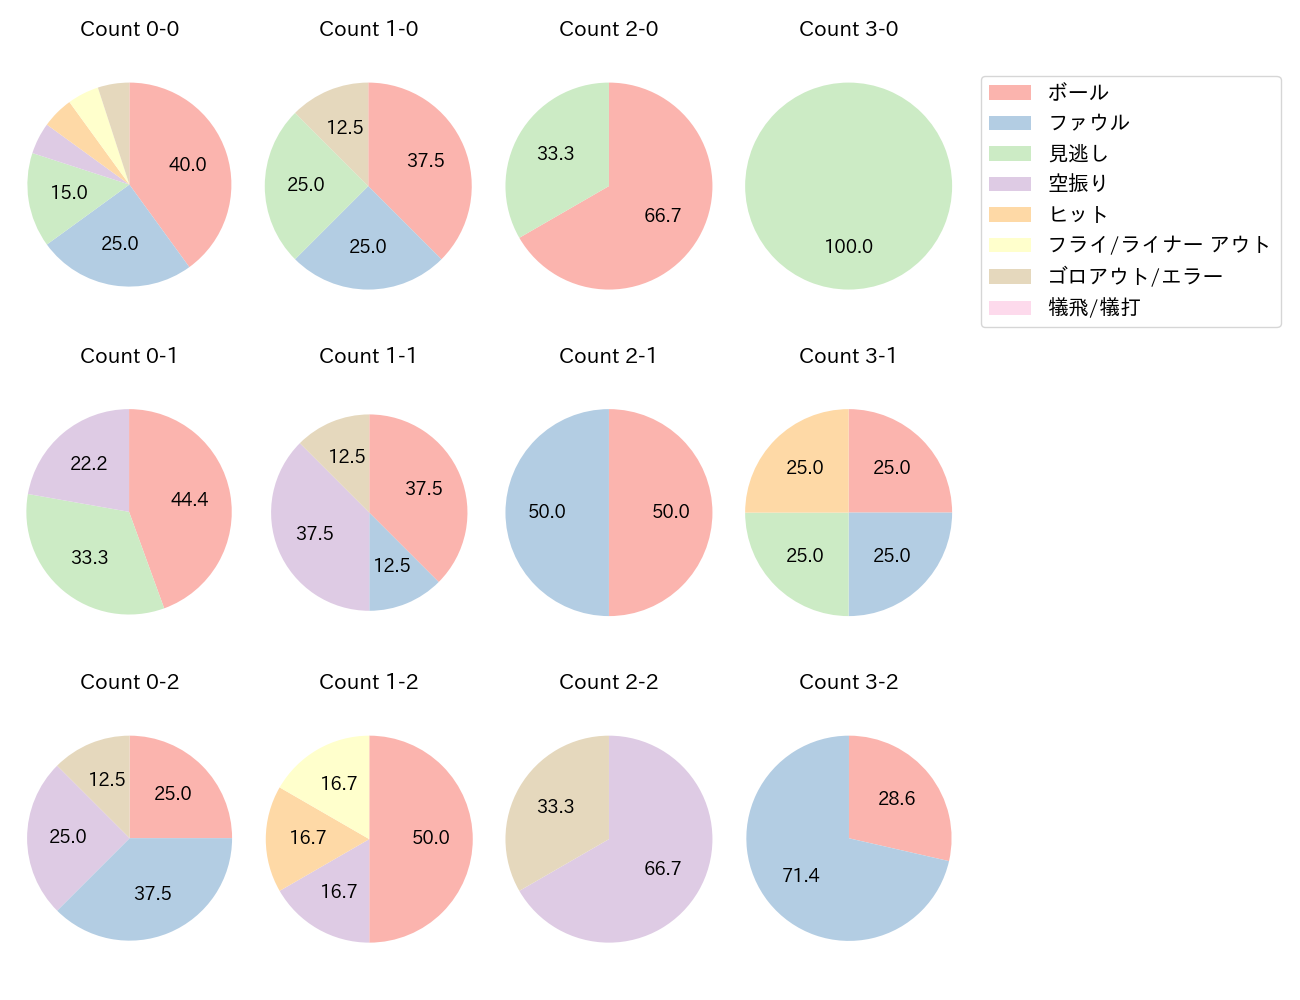 小野寺 暖の球数分布(2021年9月)